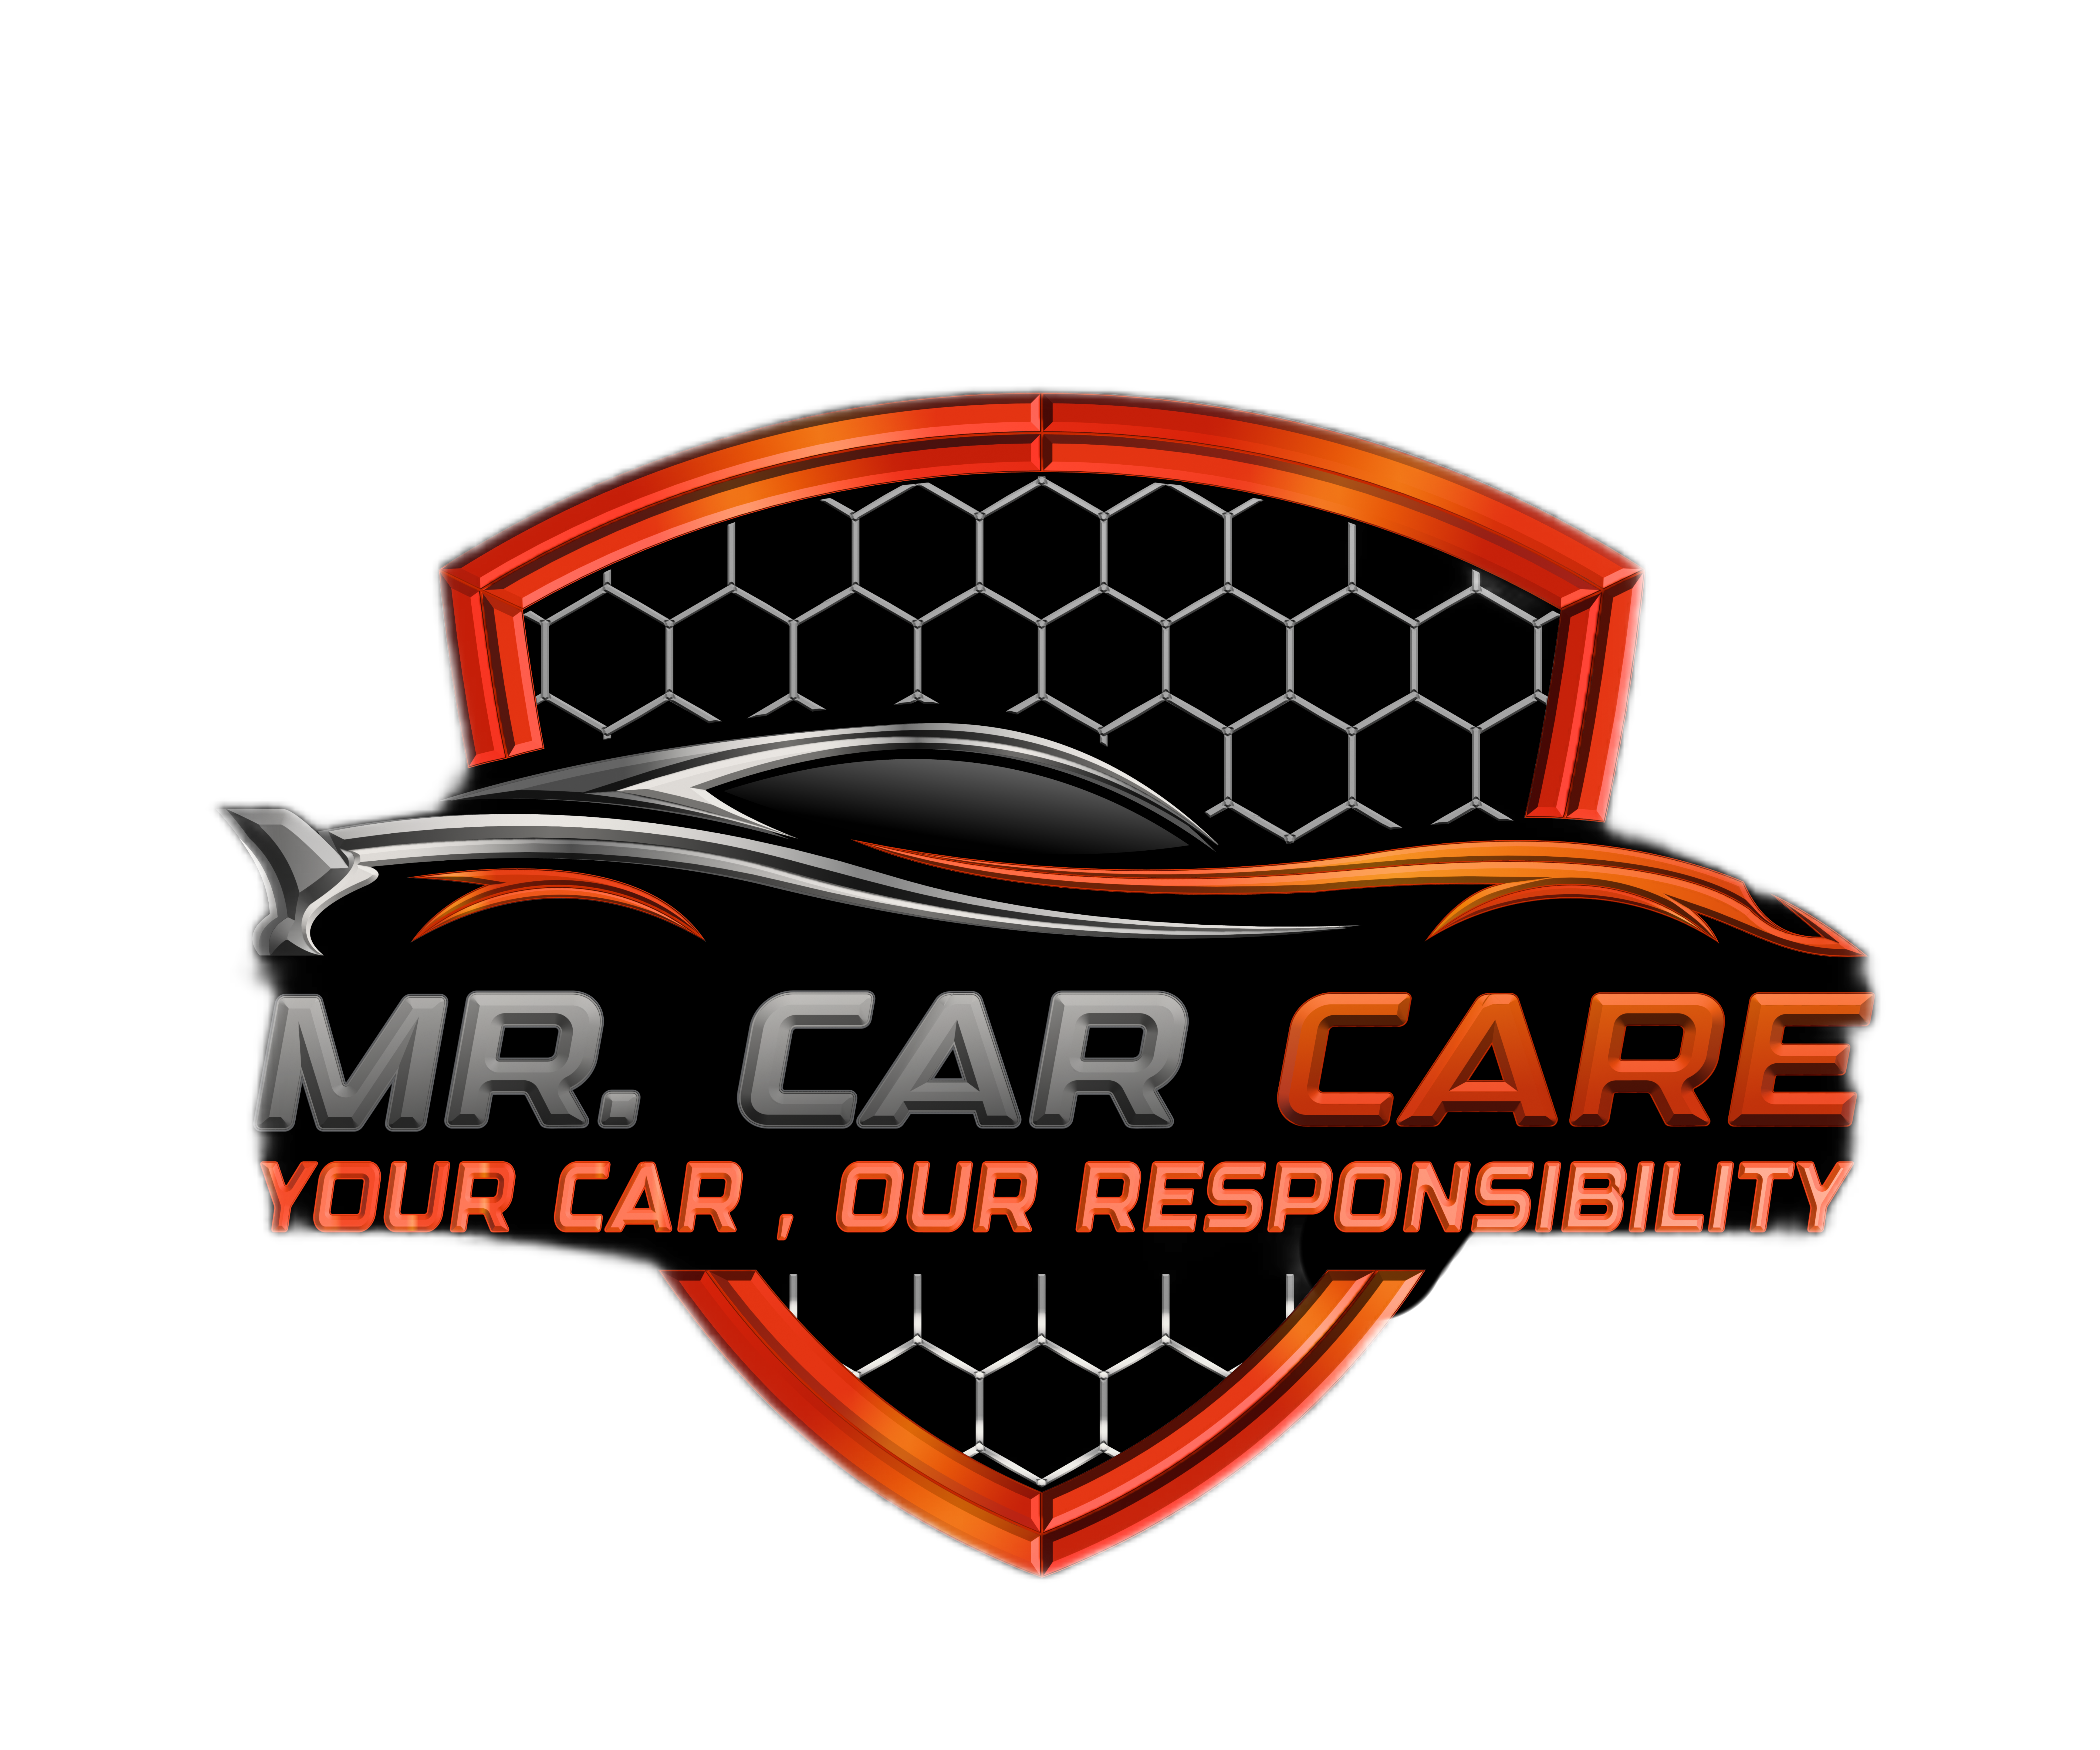 Magic Car Care Logo | Magic car, Care logo, ? logo